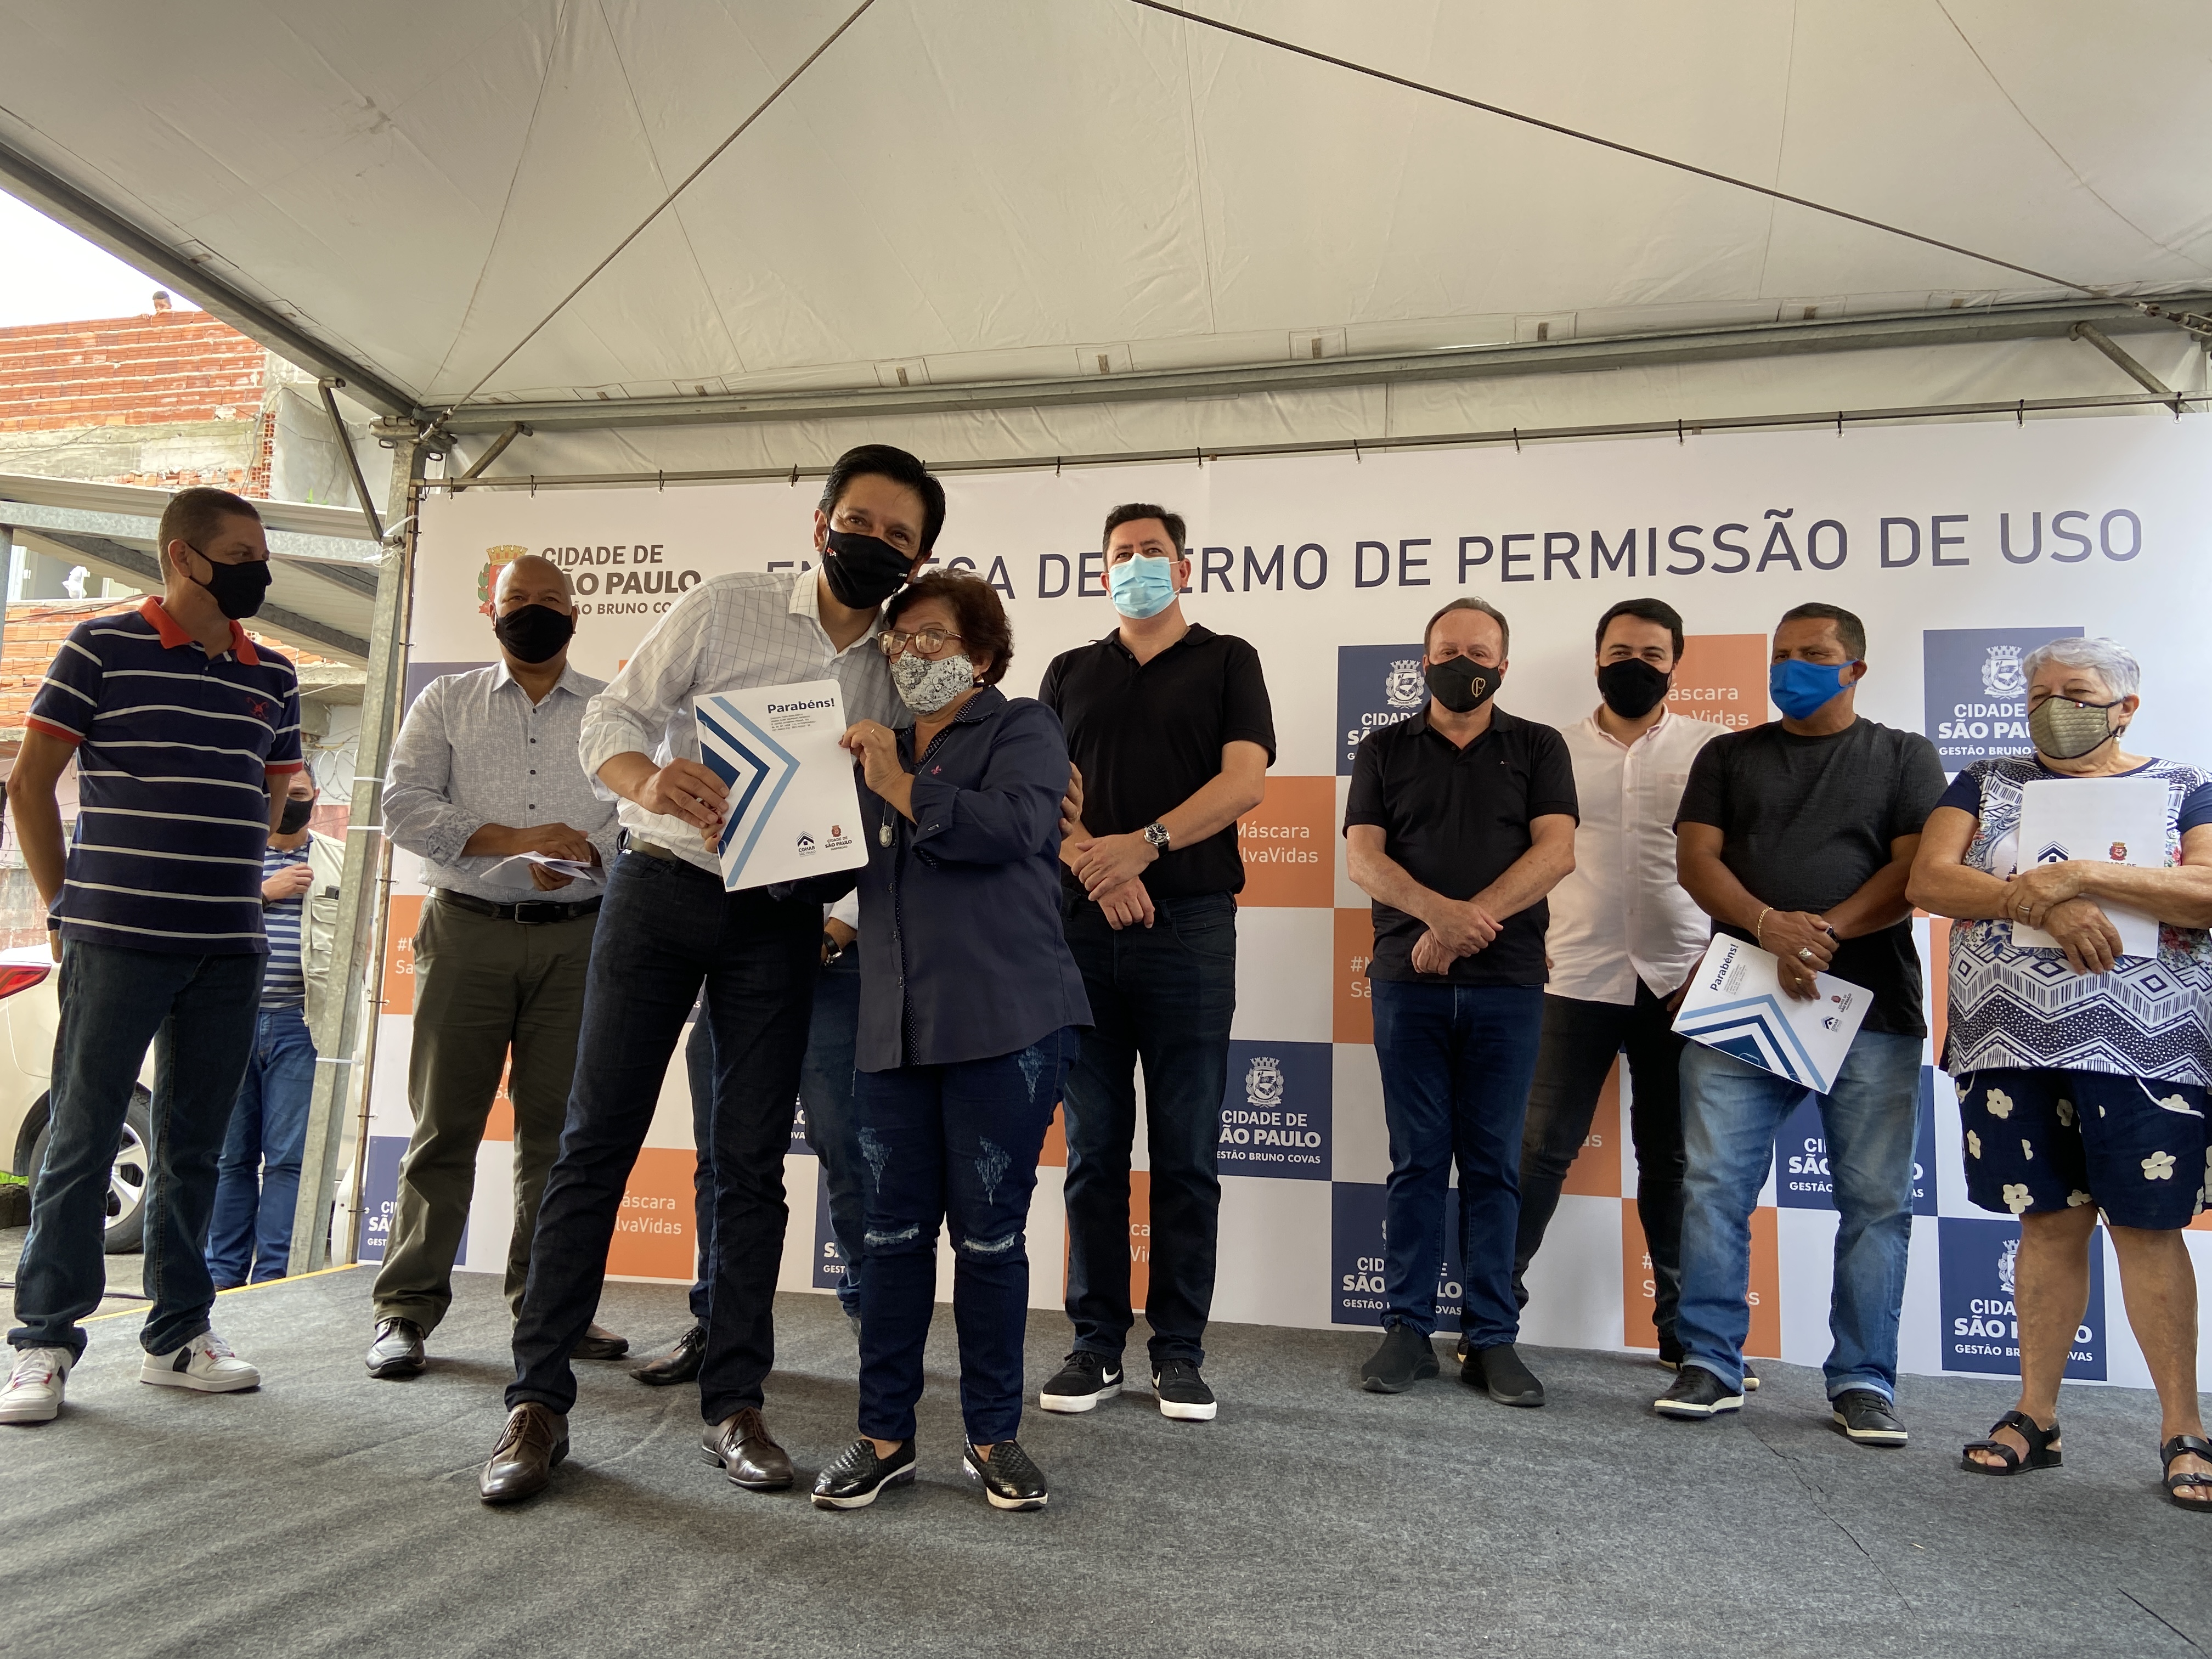 No palco estão algumas autoridades e o Prefeito Ricardo Nunes está entregando o Instrumento Contratual para uma das moradoras do Conjunto.